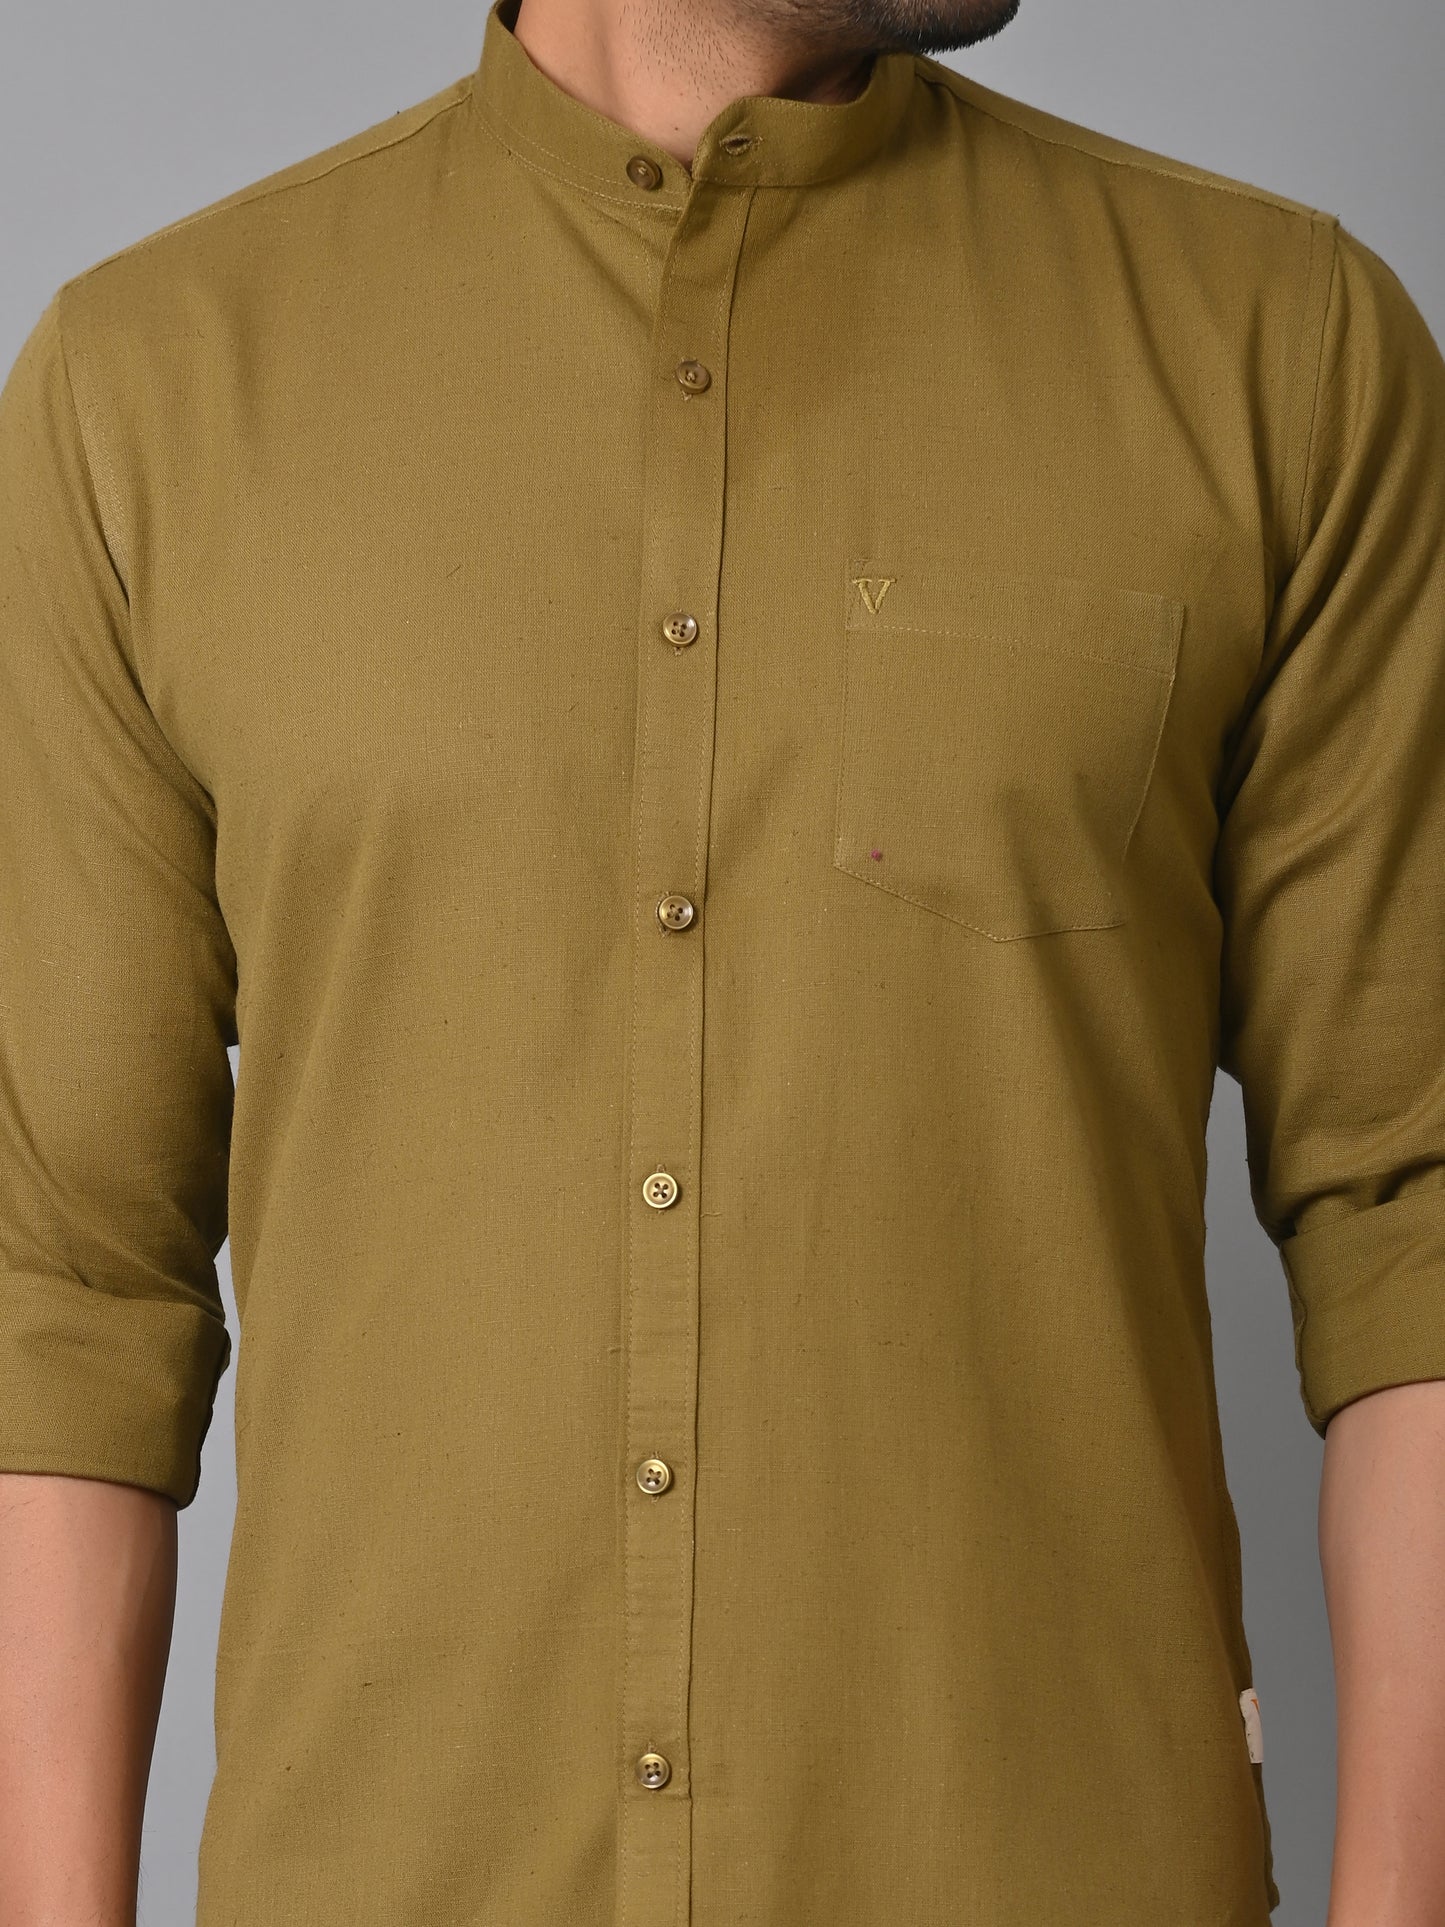 VJR Olive Green Solid Shirt